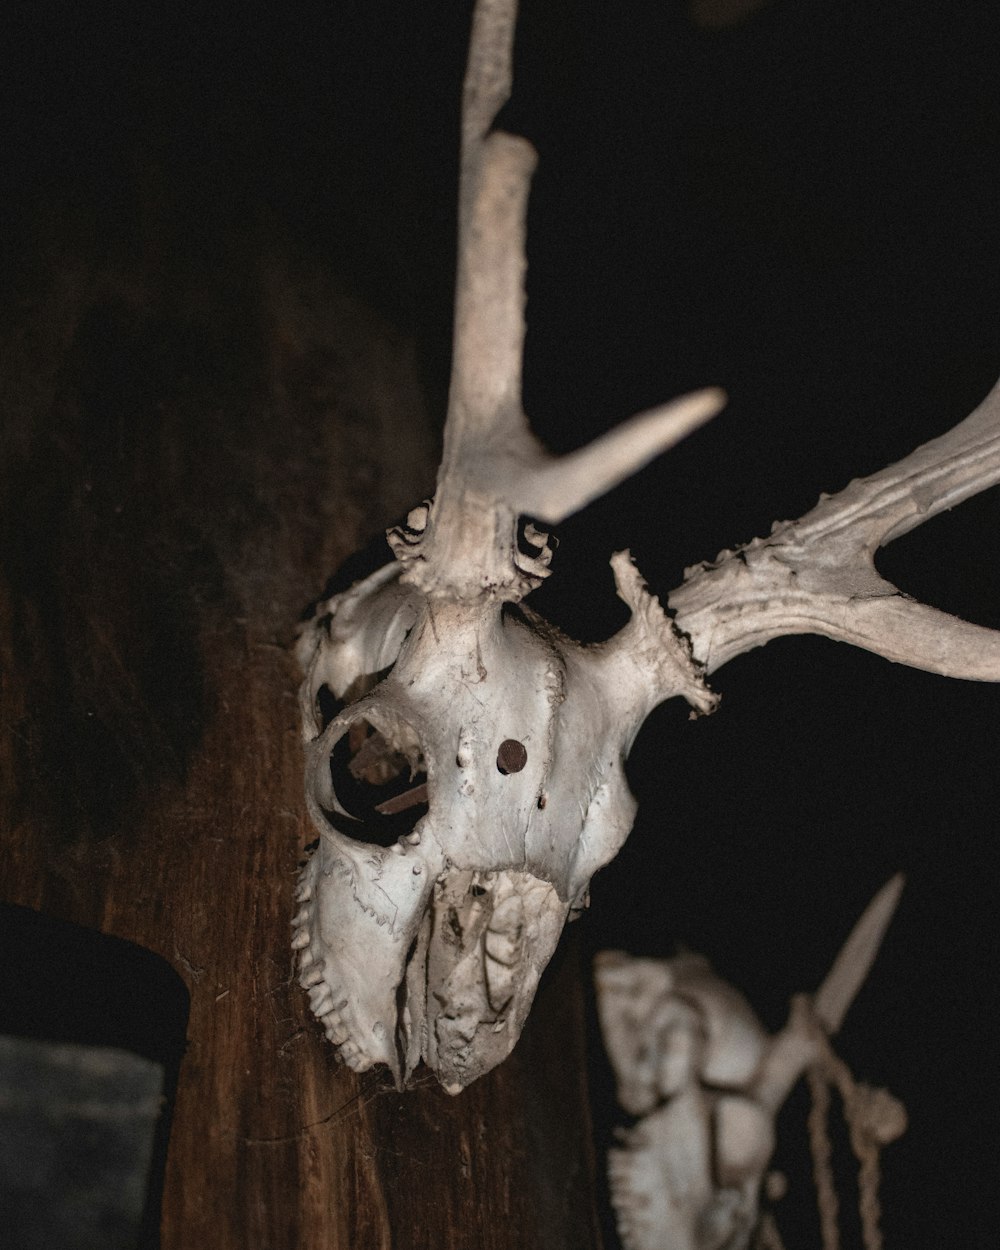 white animal skull on brown wooden table